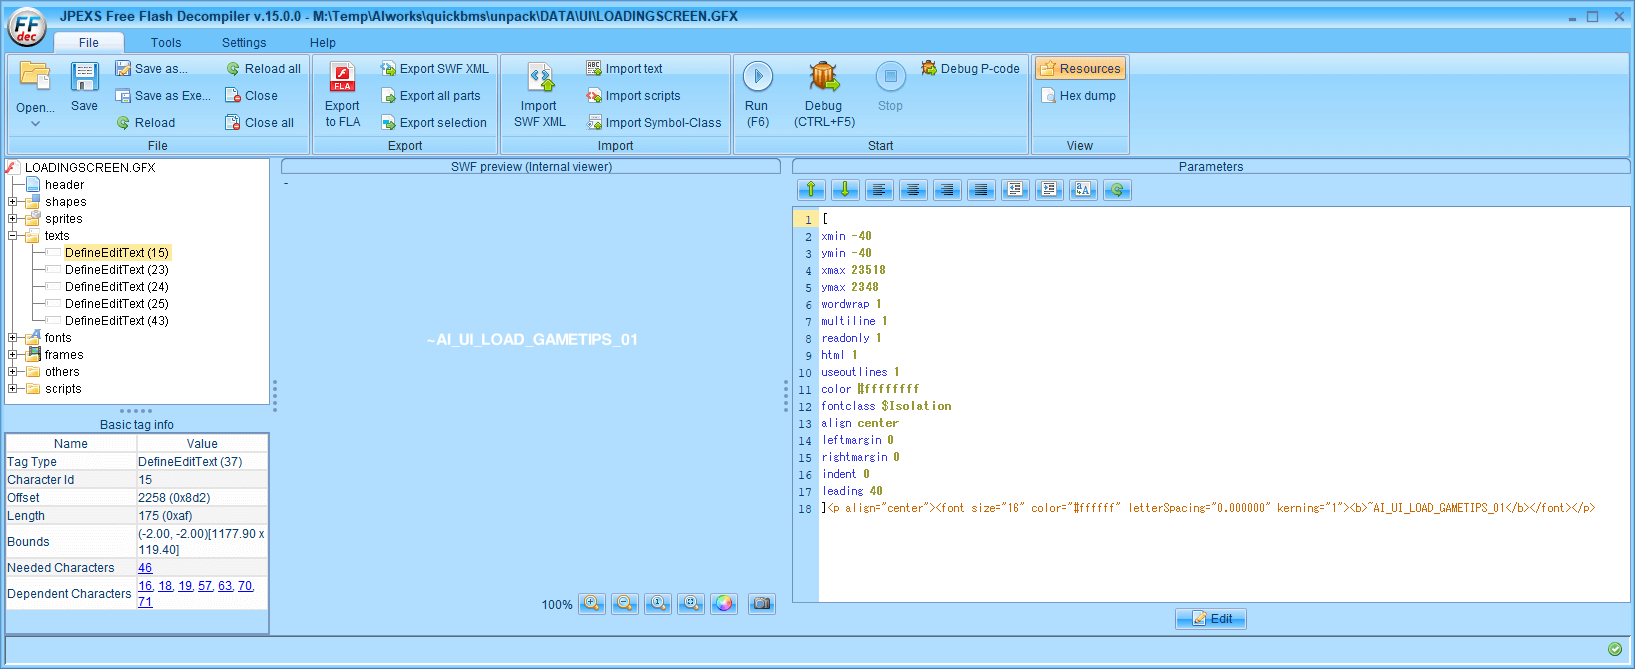 PC ゲーム ALIEN: ISOLATION 日本語化とゲームプレイ最適化メモ、PC ゲーム ALIEN: ISOLATION 解析情報、ALIEN: ISOLATION フォントサイズ変更方法、FFDec で LOADINGSCREEN.GFX ファイルを開き、ツリー画面の texts フォルダにある複数の DefineEditText のうち DefineEditText（15）が ~AI_UI_LOAD_GAMETIPS_01、画面右側のプレビュー画面と Parameters 画面の 18行目にあるタグ内に ~AI_UI_LOAD_GAMETIPS_01 の文字あり